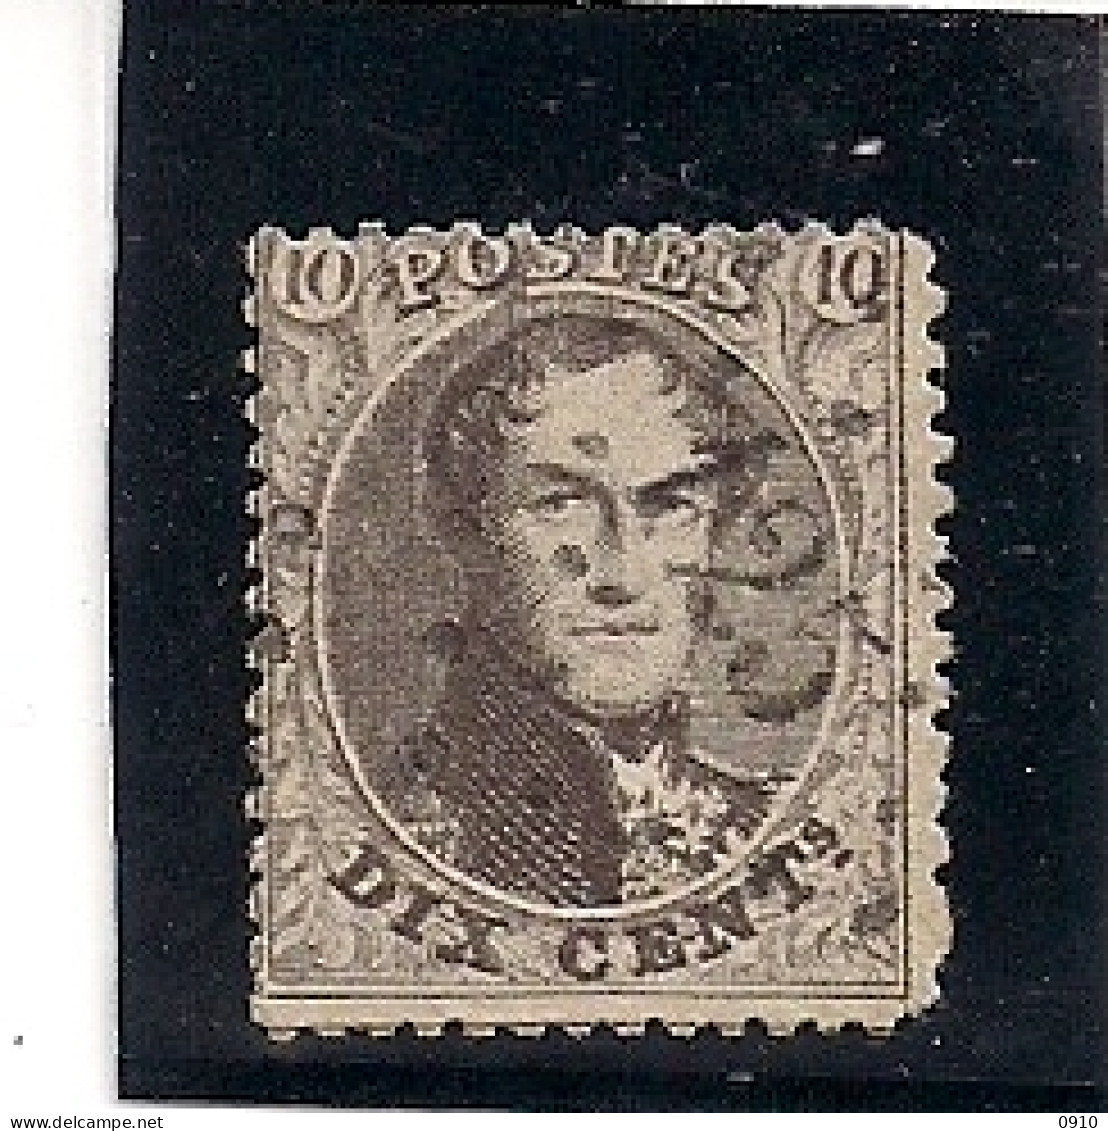 14A-LP125-FEXHE LE HT CLOCHER - 1863-1864 Medallions (13/16)